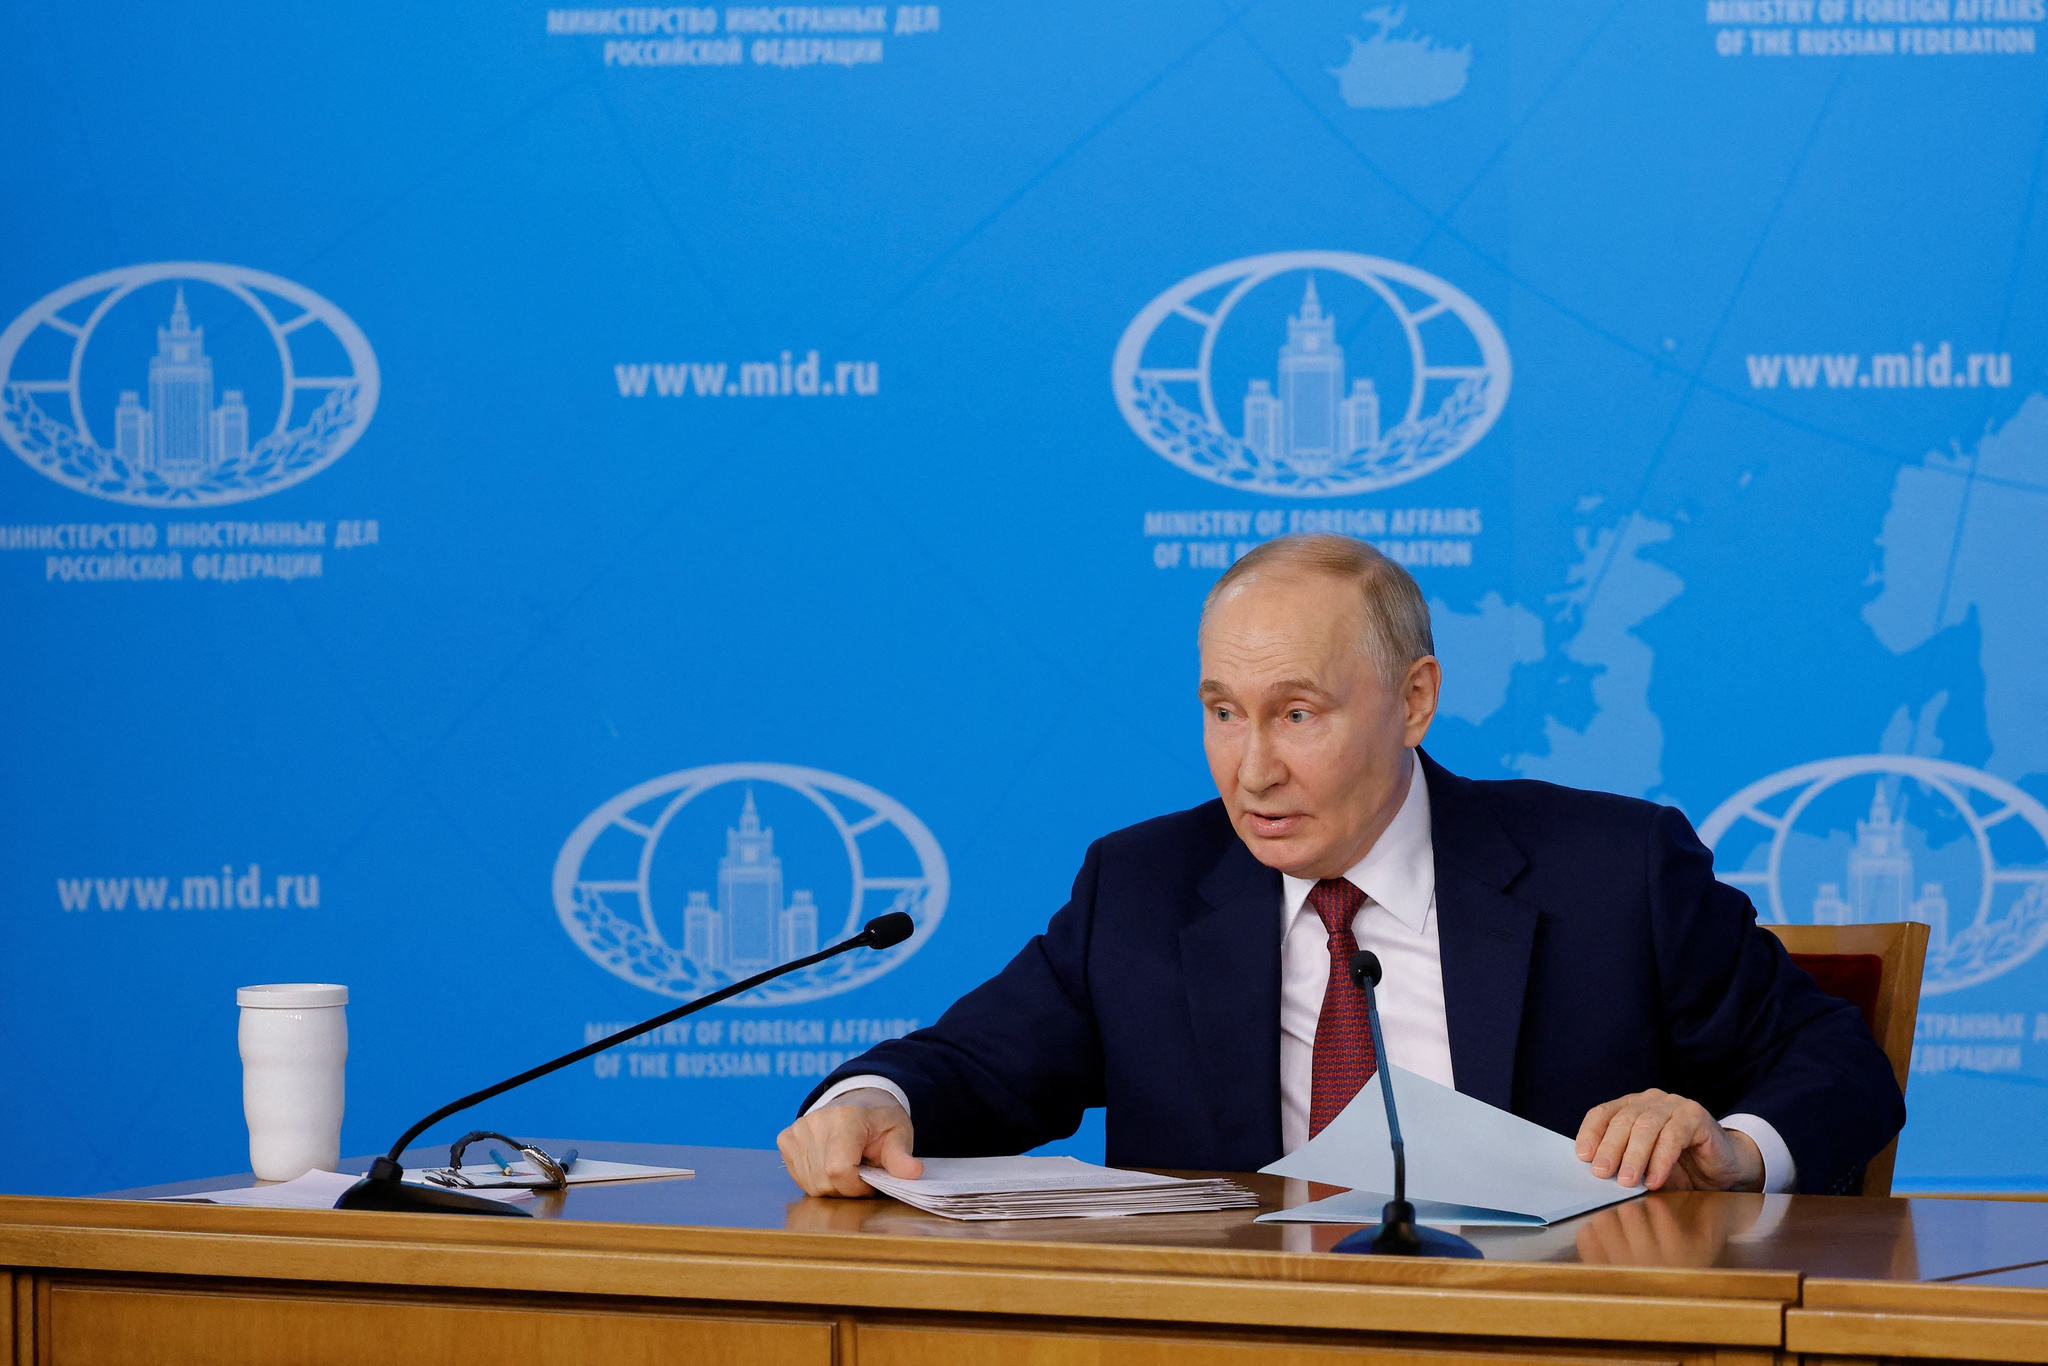 Krieg in der Ukraine: Putin fordert mehr ukrainisches Territorium, um den Krieg zu beenden |  Krieg in der Ukraine